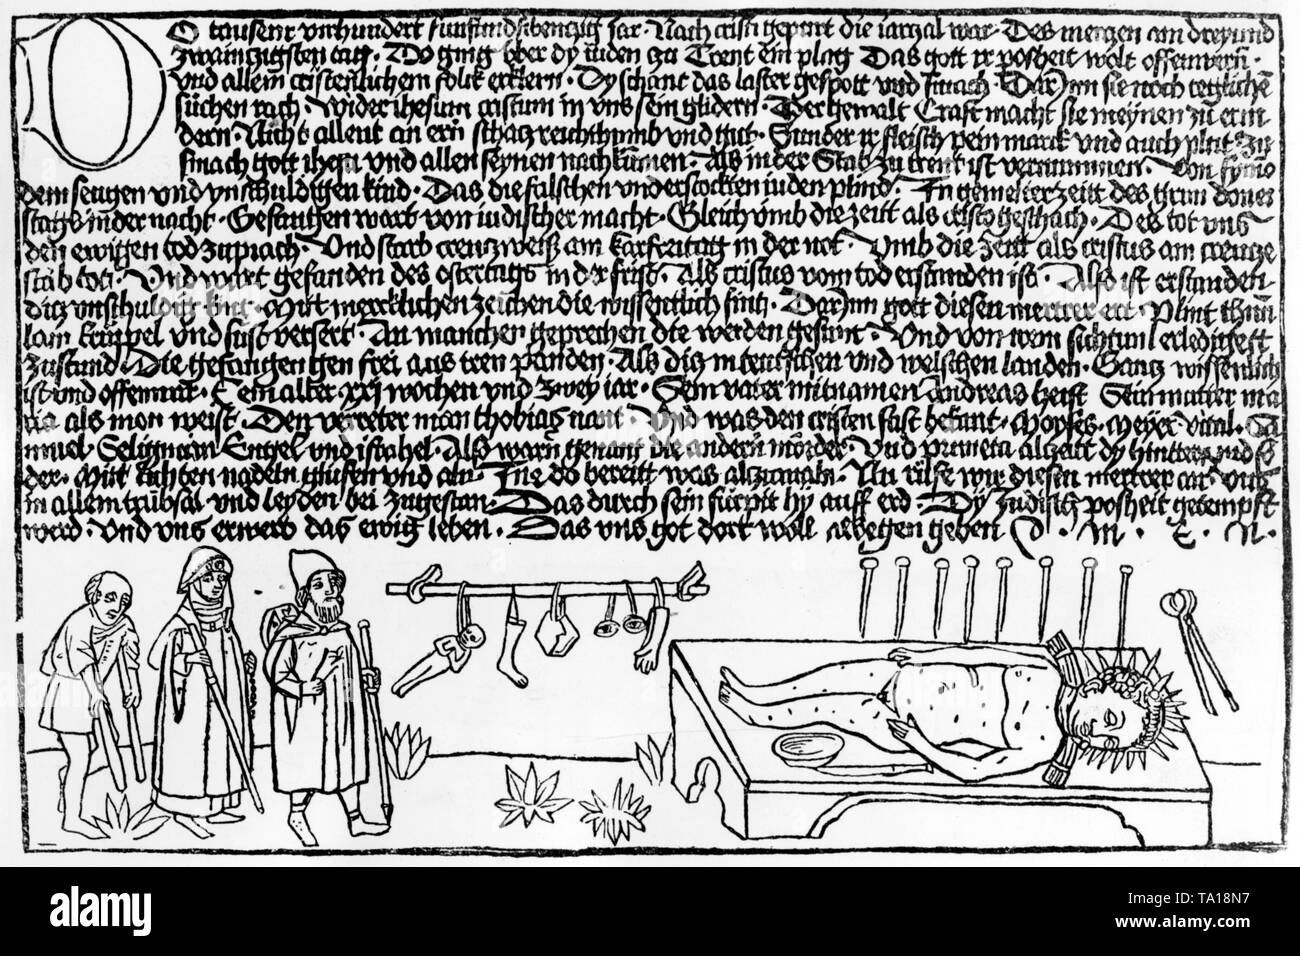 Kupferstich von Johannes Matthias Tuberinus. Unter Folter, Juden gestanden, im Jahr 1475 die Ermordung des jungen Simon. Seitdem, Simon wurde von der Katholischen Kirche als Märtyrer verehrt. Stockfoto